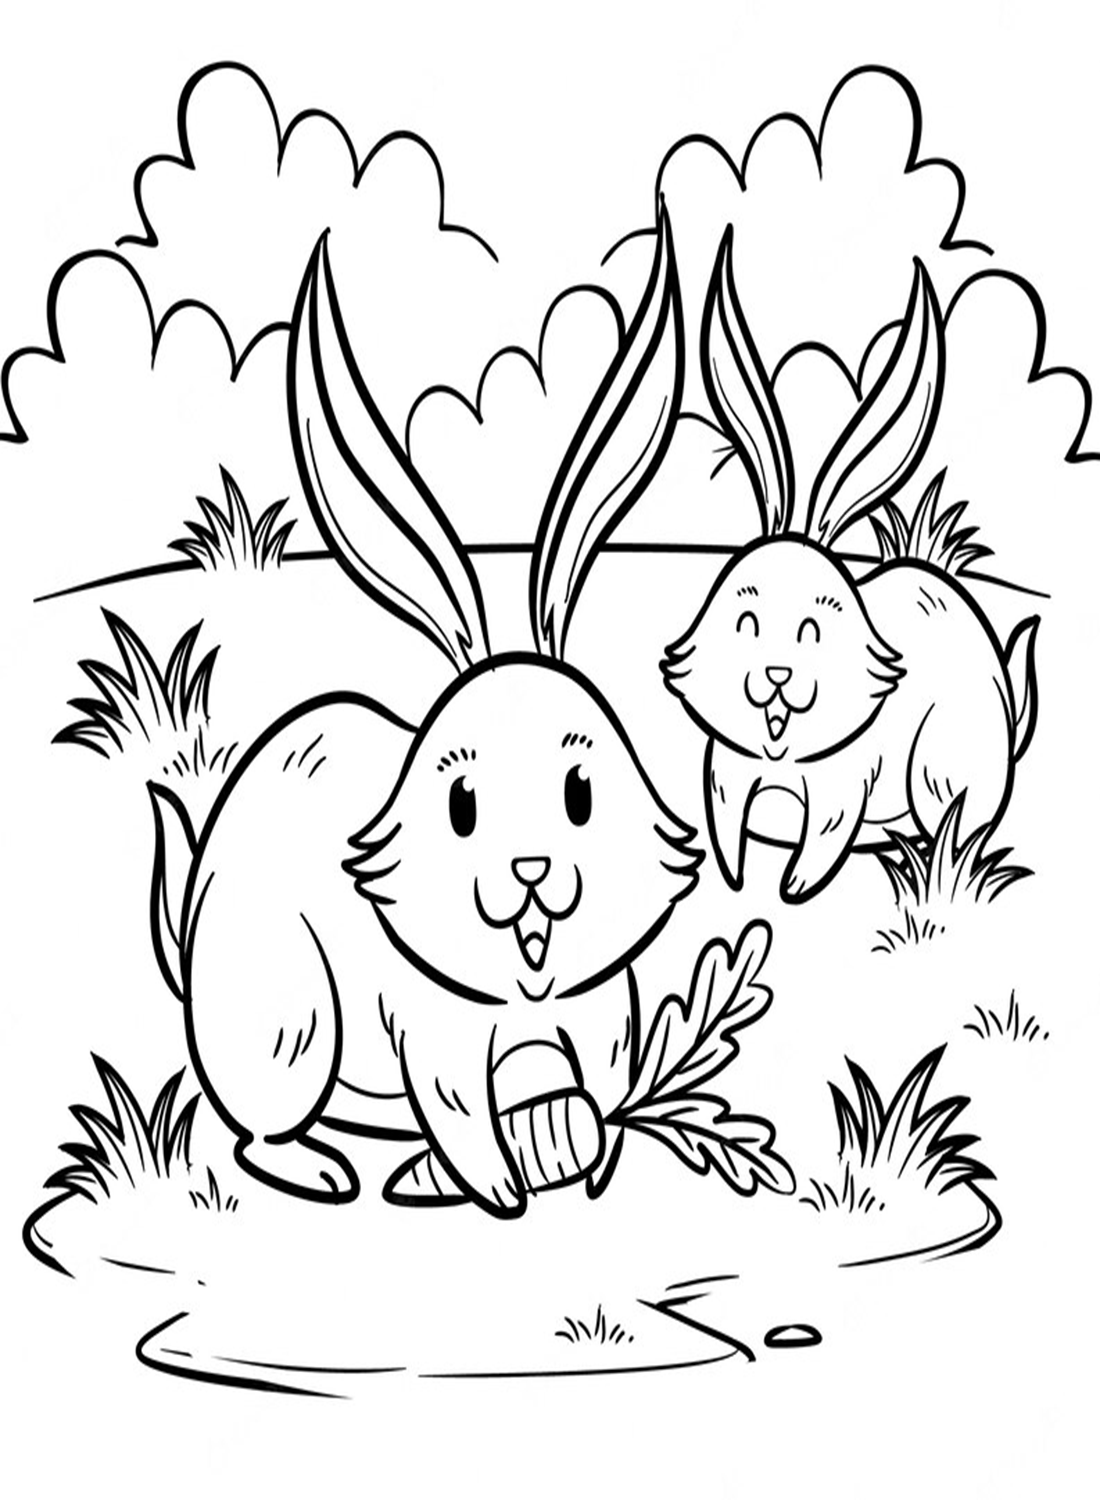 Dois coelhos brincando na grama from Rabbit